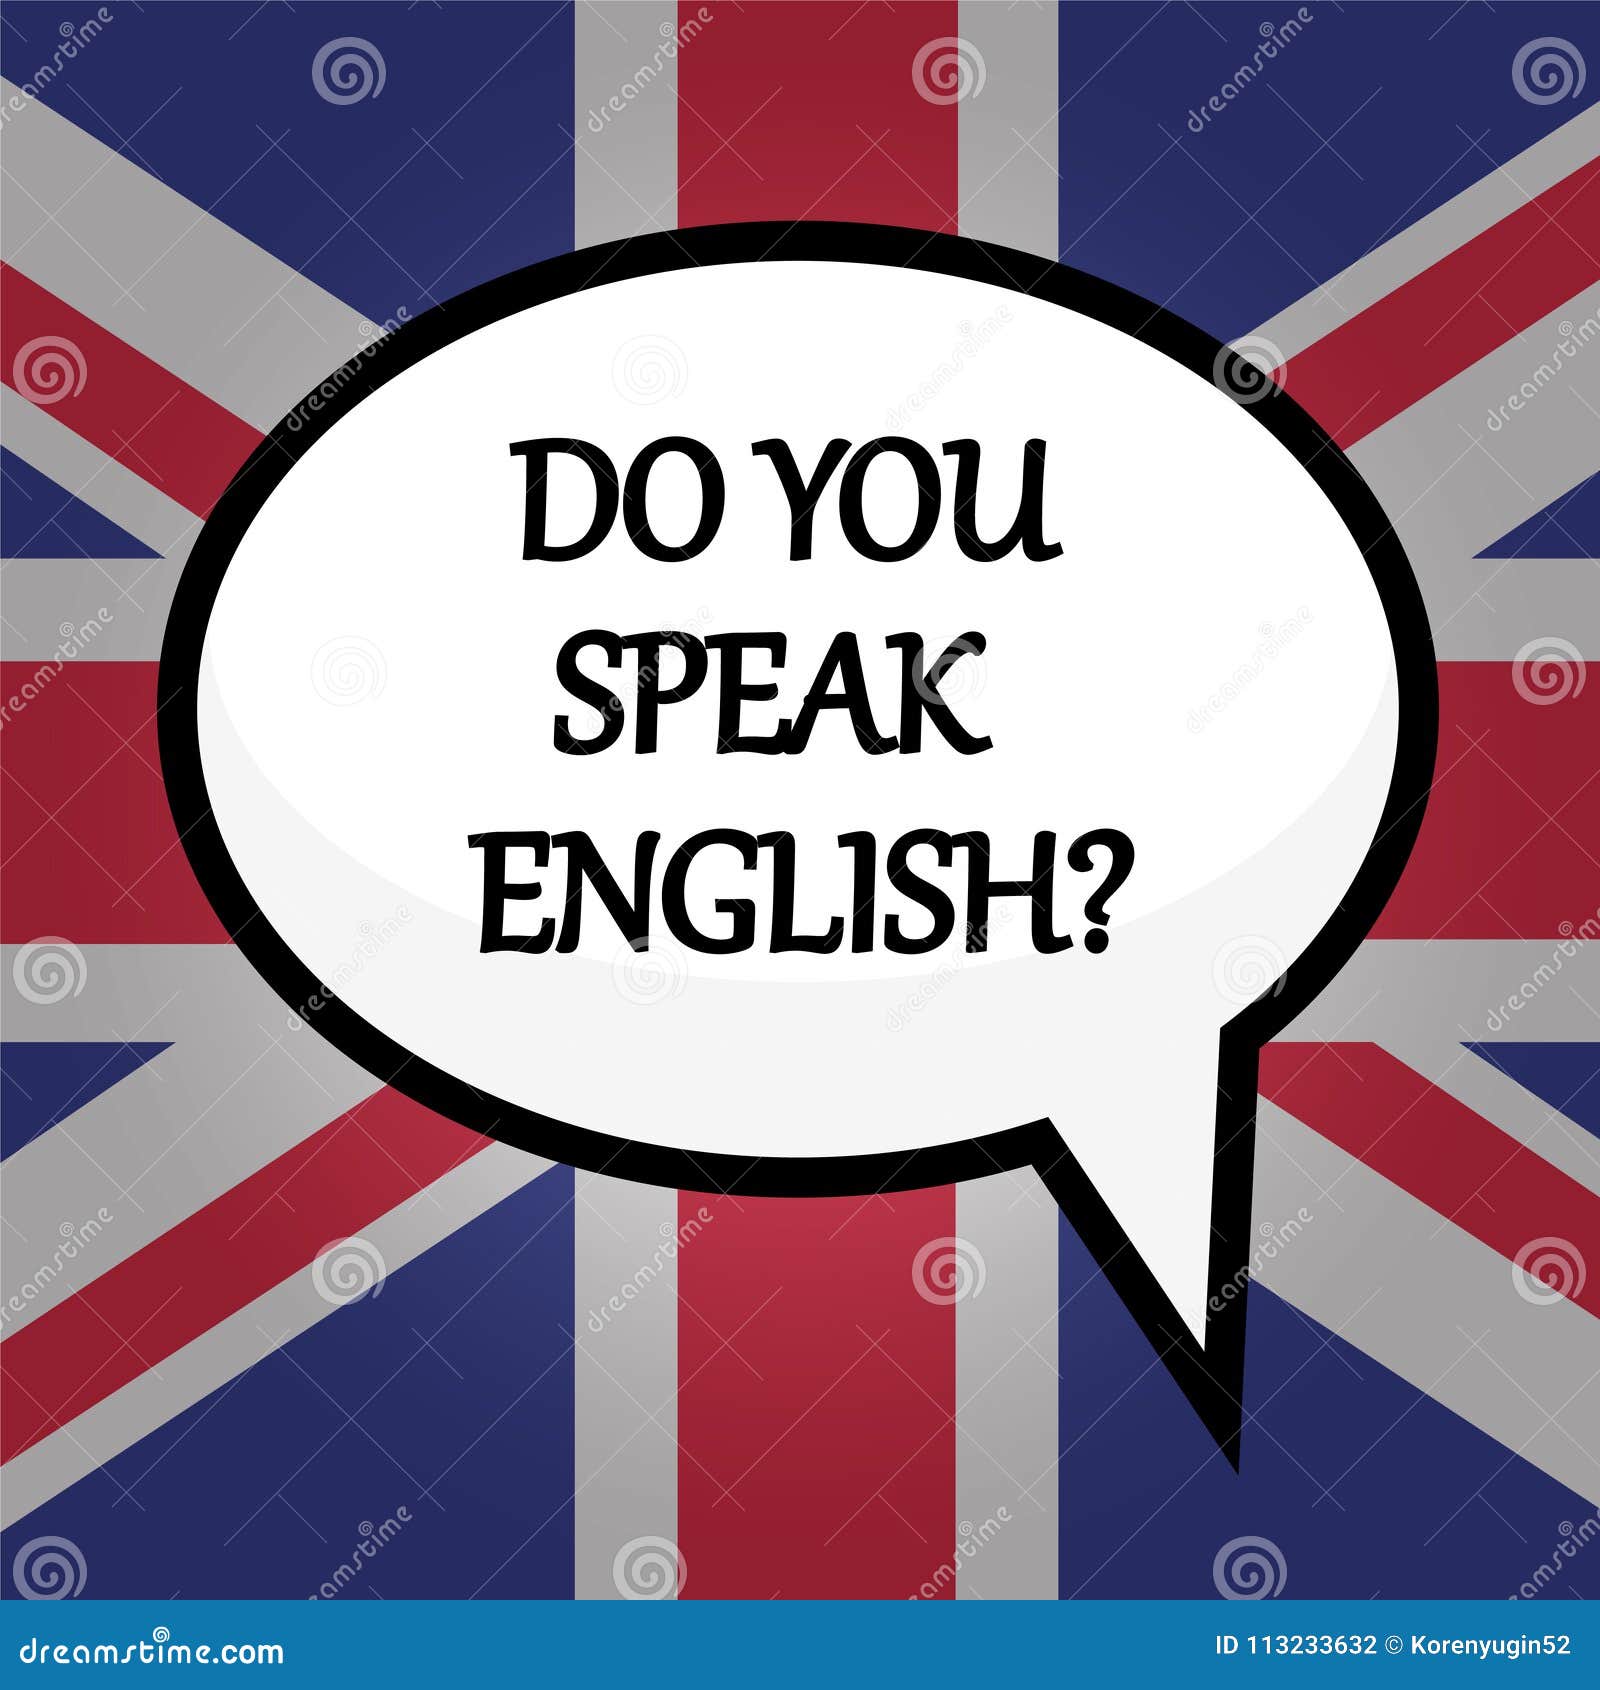 Do you speak english well. Do you speak English. Let's speak English. Speak English надпись. Плакат do you speak English.